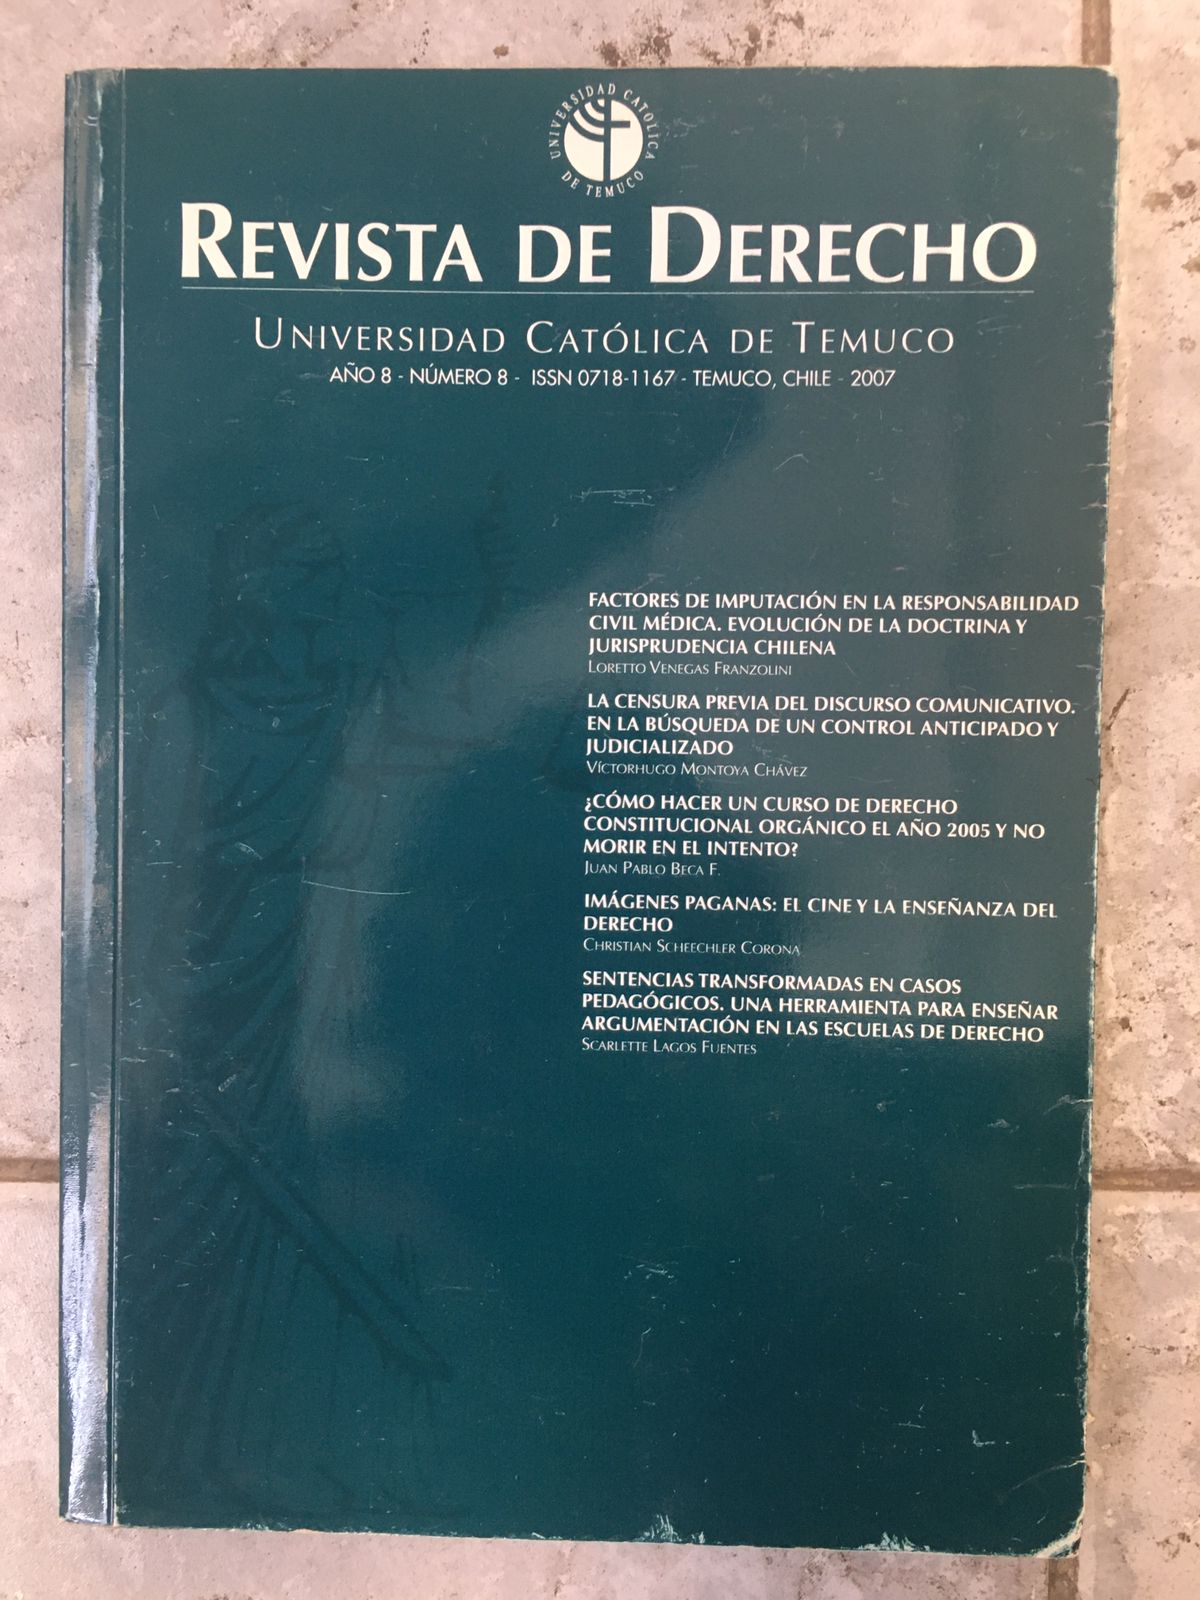 Revista de derecho, Universidad Católica de Temuco